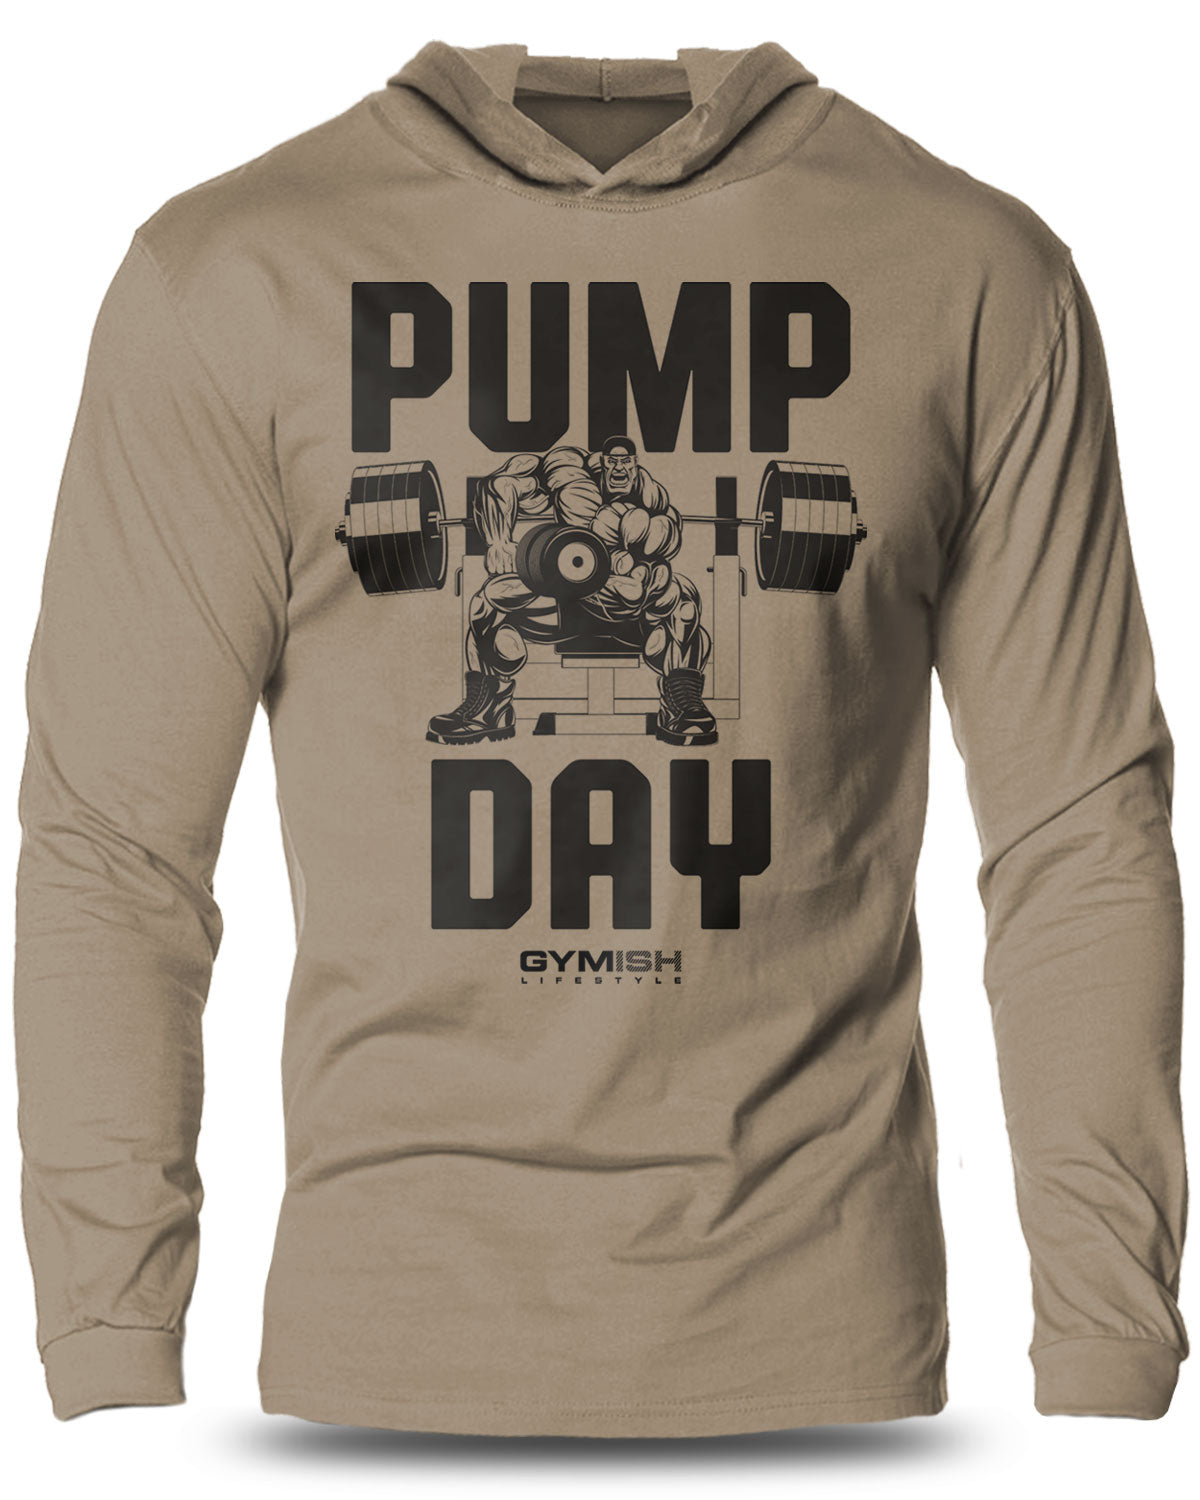 024- Pump Day Lightweight Long Sleeve Hooded T-shirt for Men